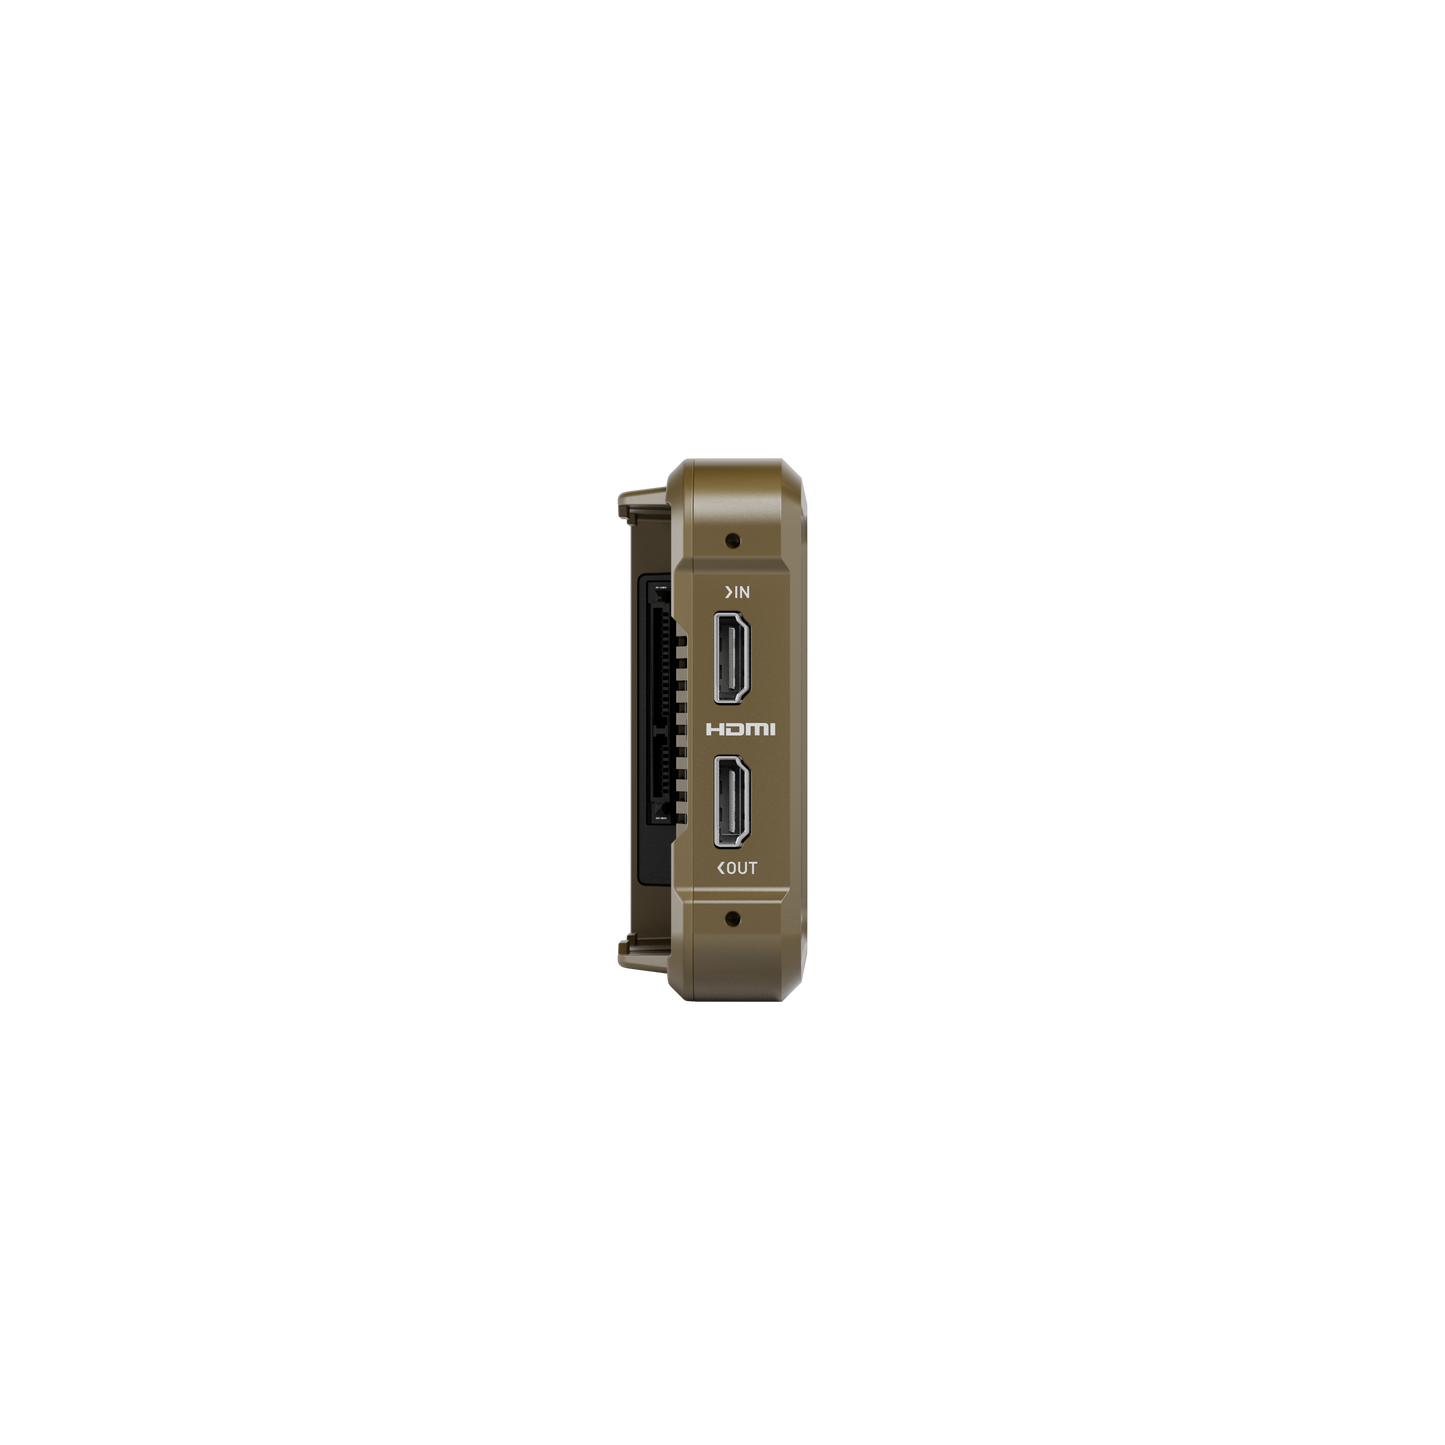 ATOMOS NINJA 5-INCH, 1000NIT HDR MONITOR-RECORDER FOR DSLR AND MIRRORLESS CAMERAS